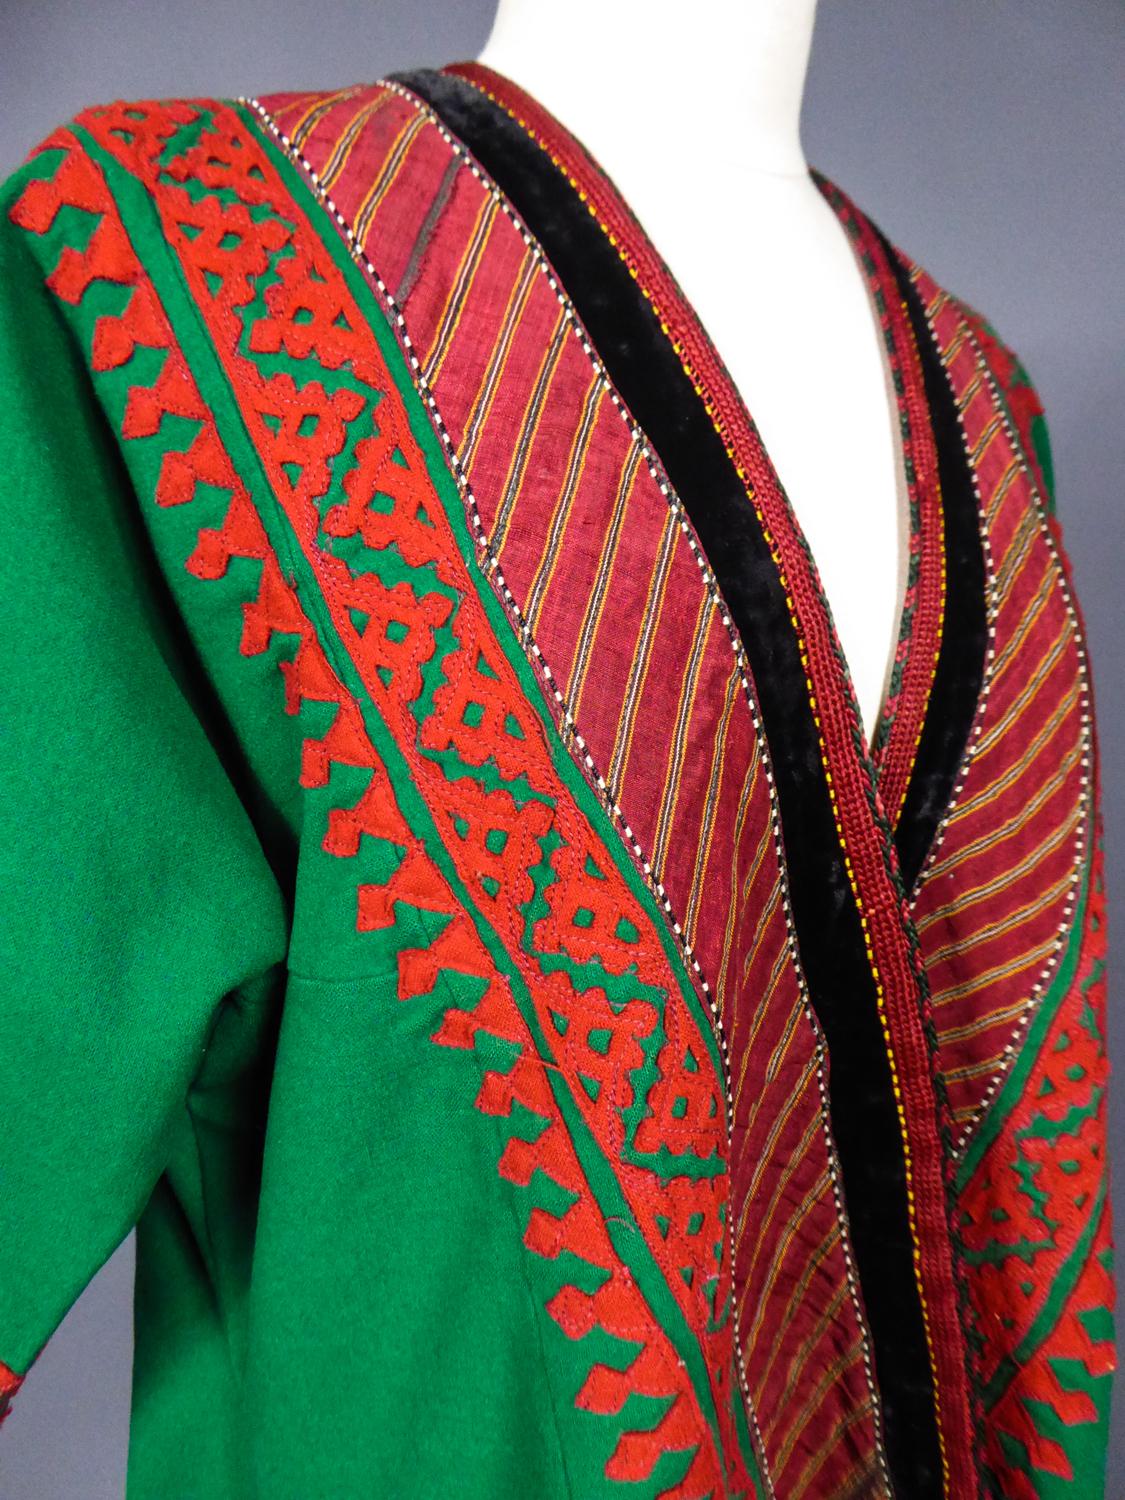 A Woolen Appliqué Coat - Turkmenistan Circa 1950 For Sale 7